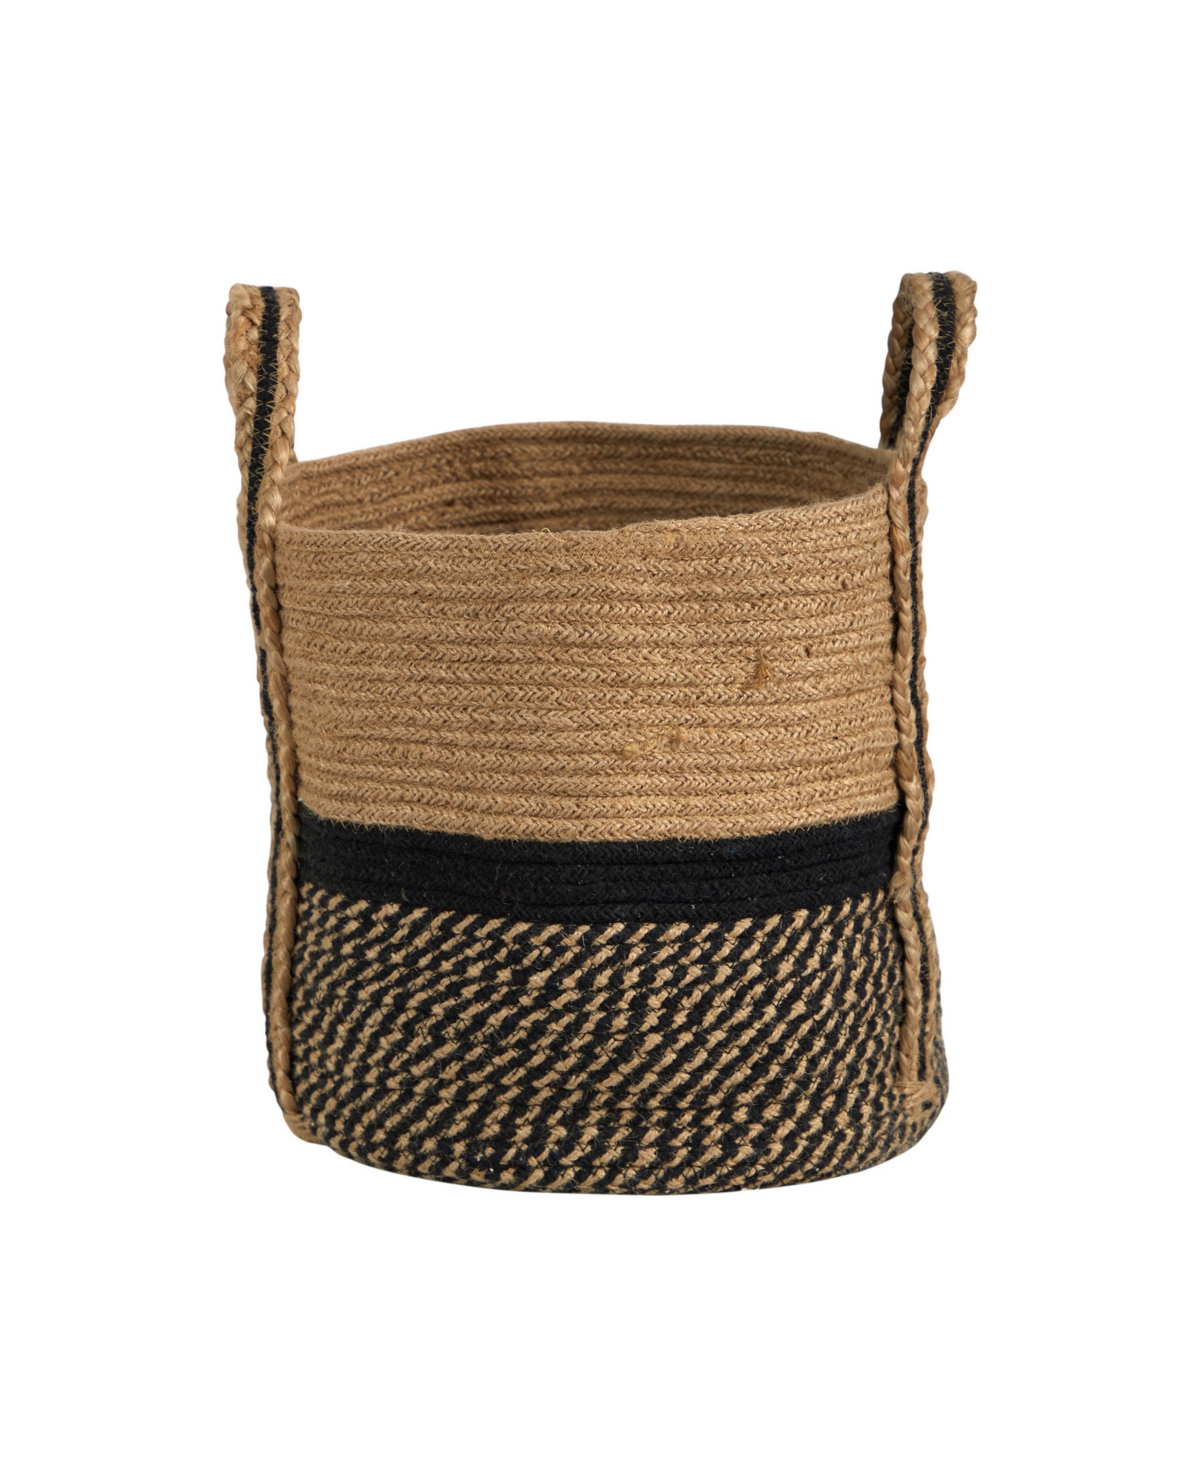 13" Boho Chic Natural Basket Planter with Handles - Beige, Black